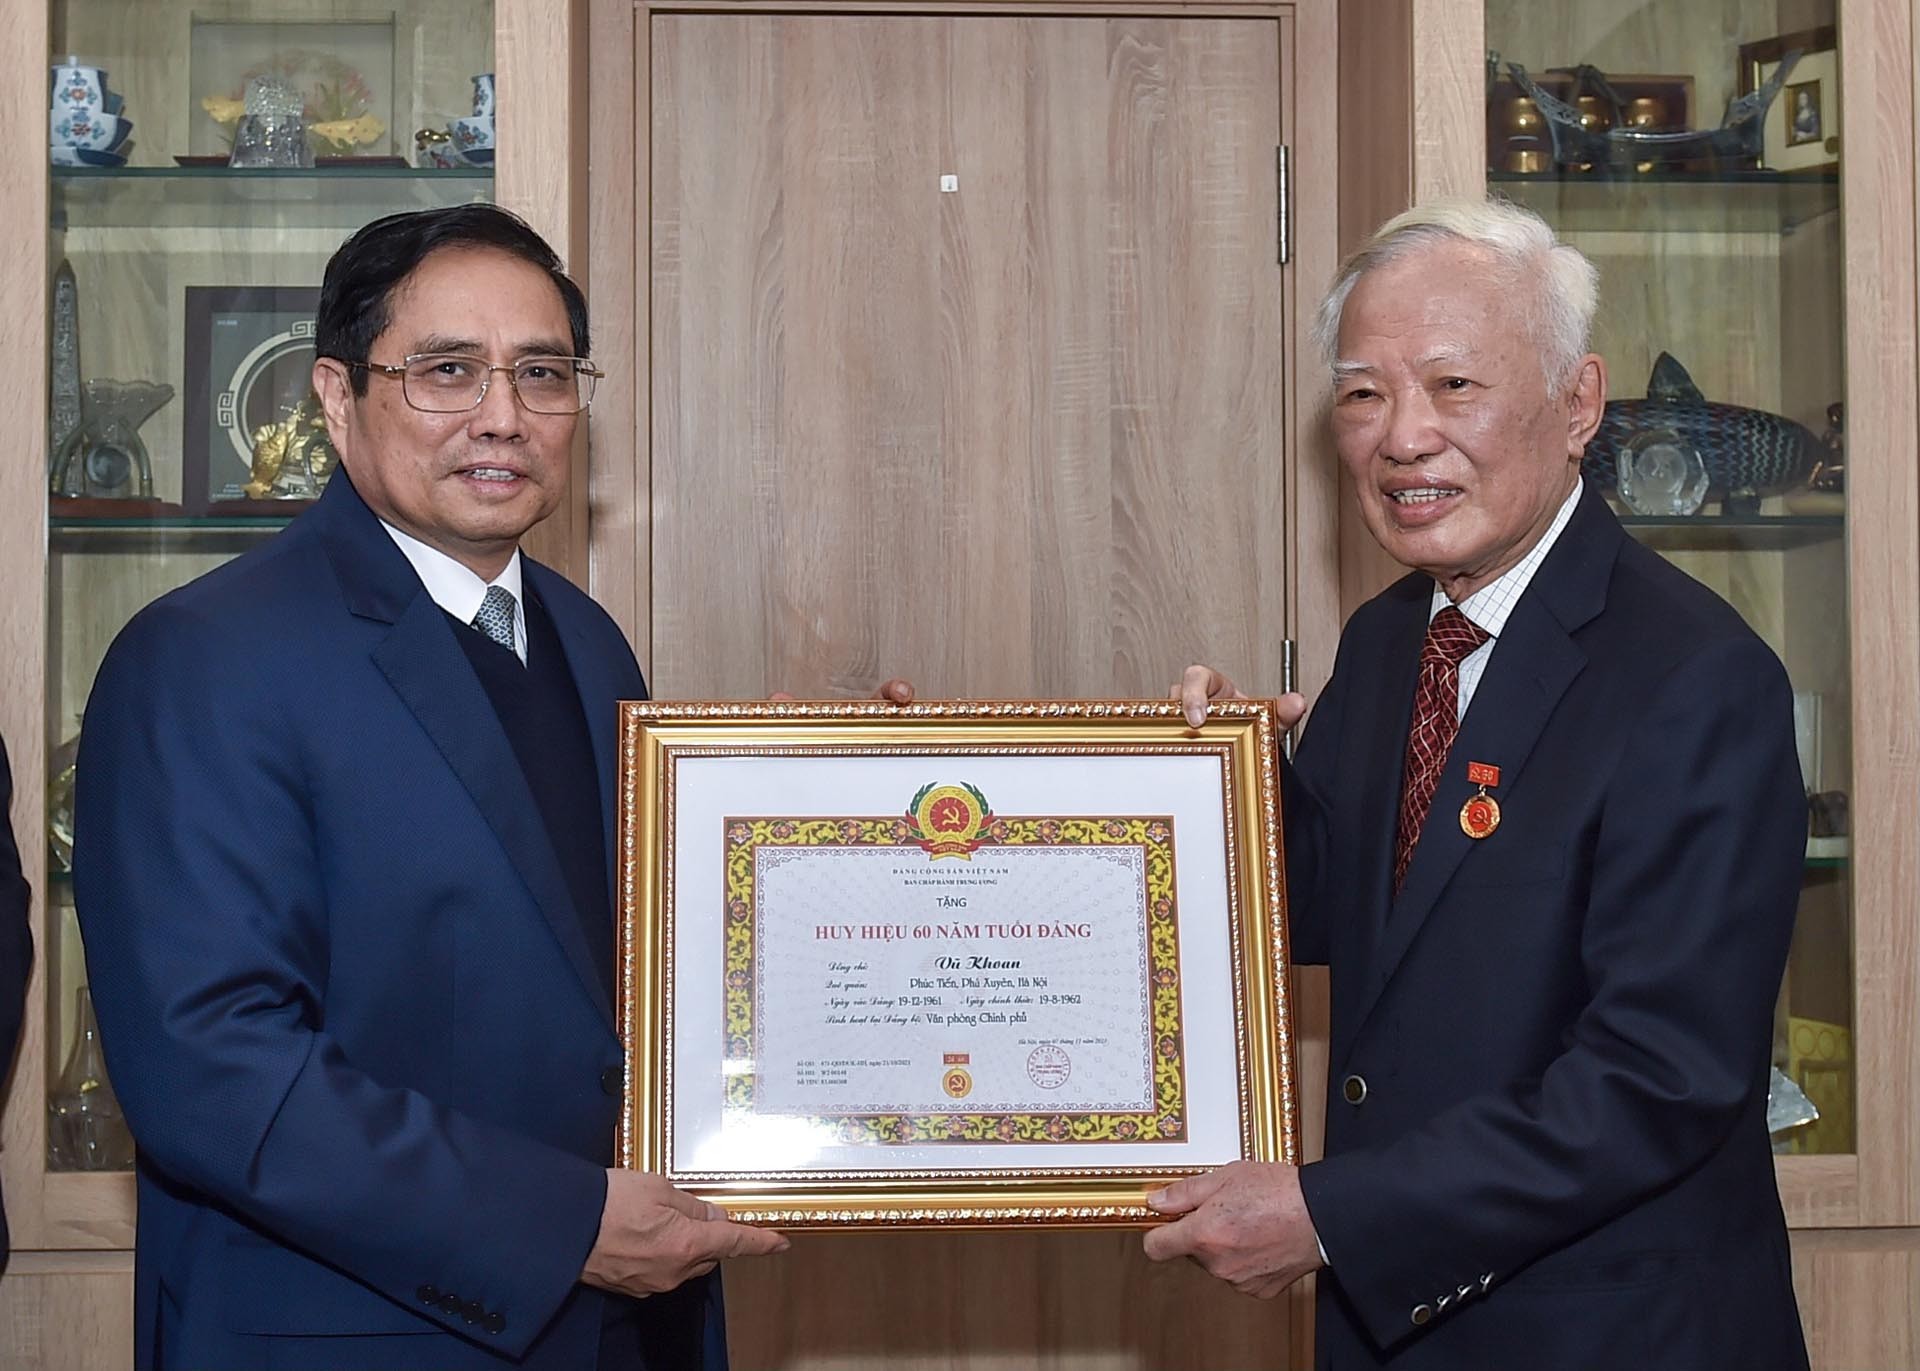 Thủ tướng Phạm Minh Chính trao Huy hiệu 60 năm tuổi Đảng tặng đồng chí Vũ Khoan. (Nguồn: VGP)